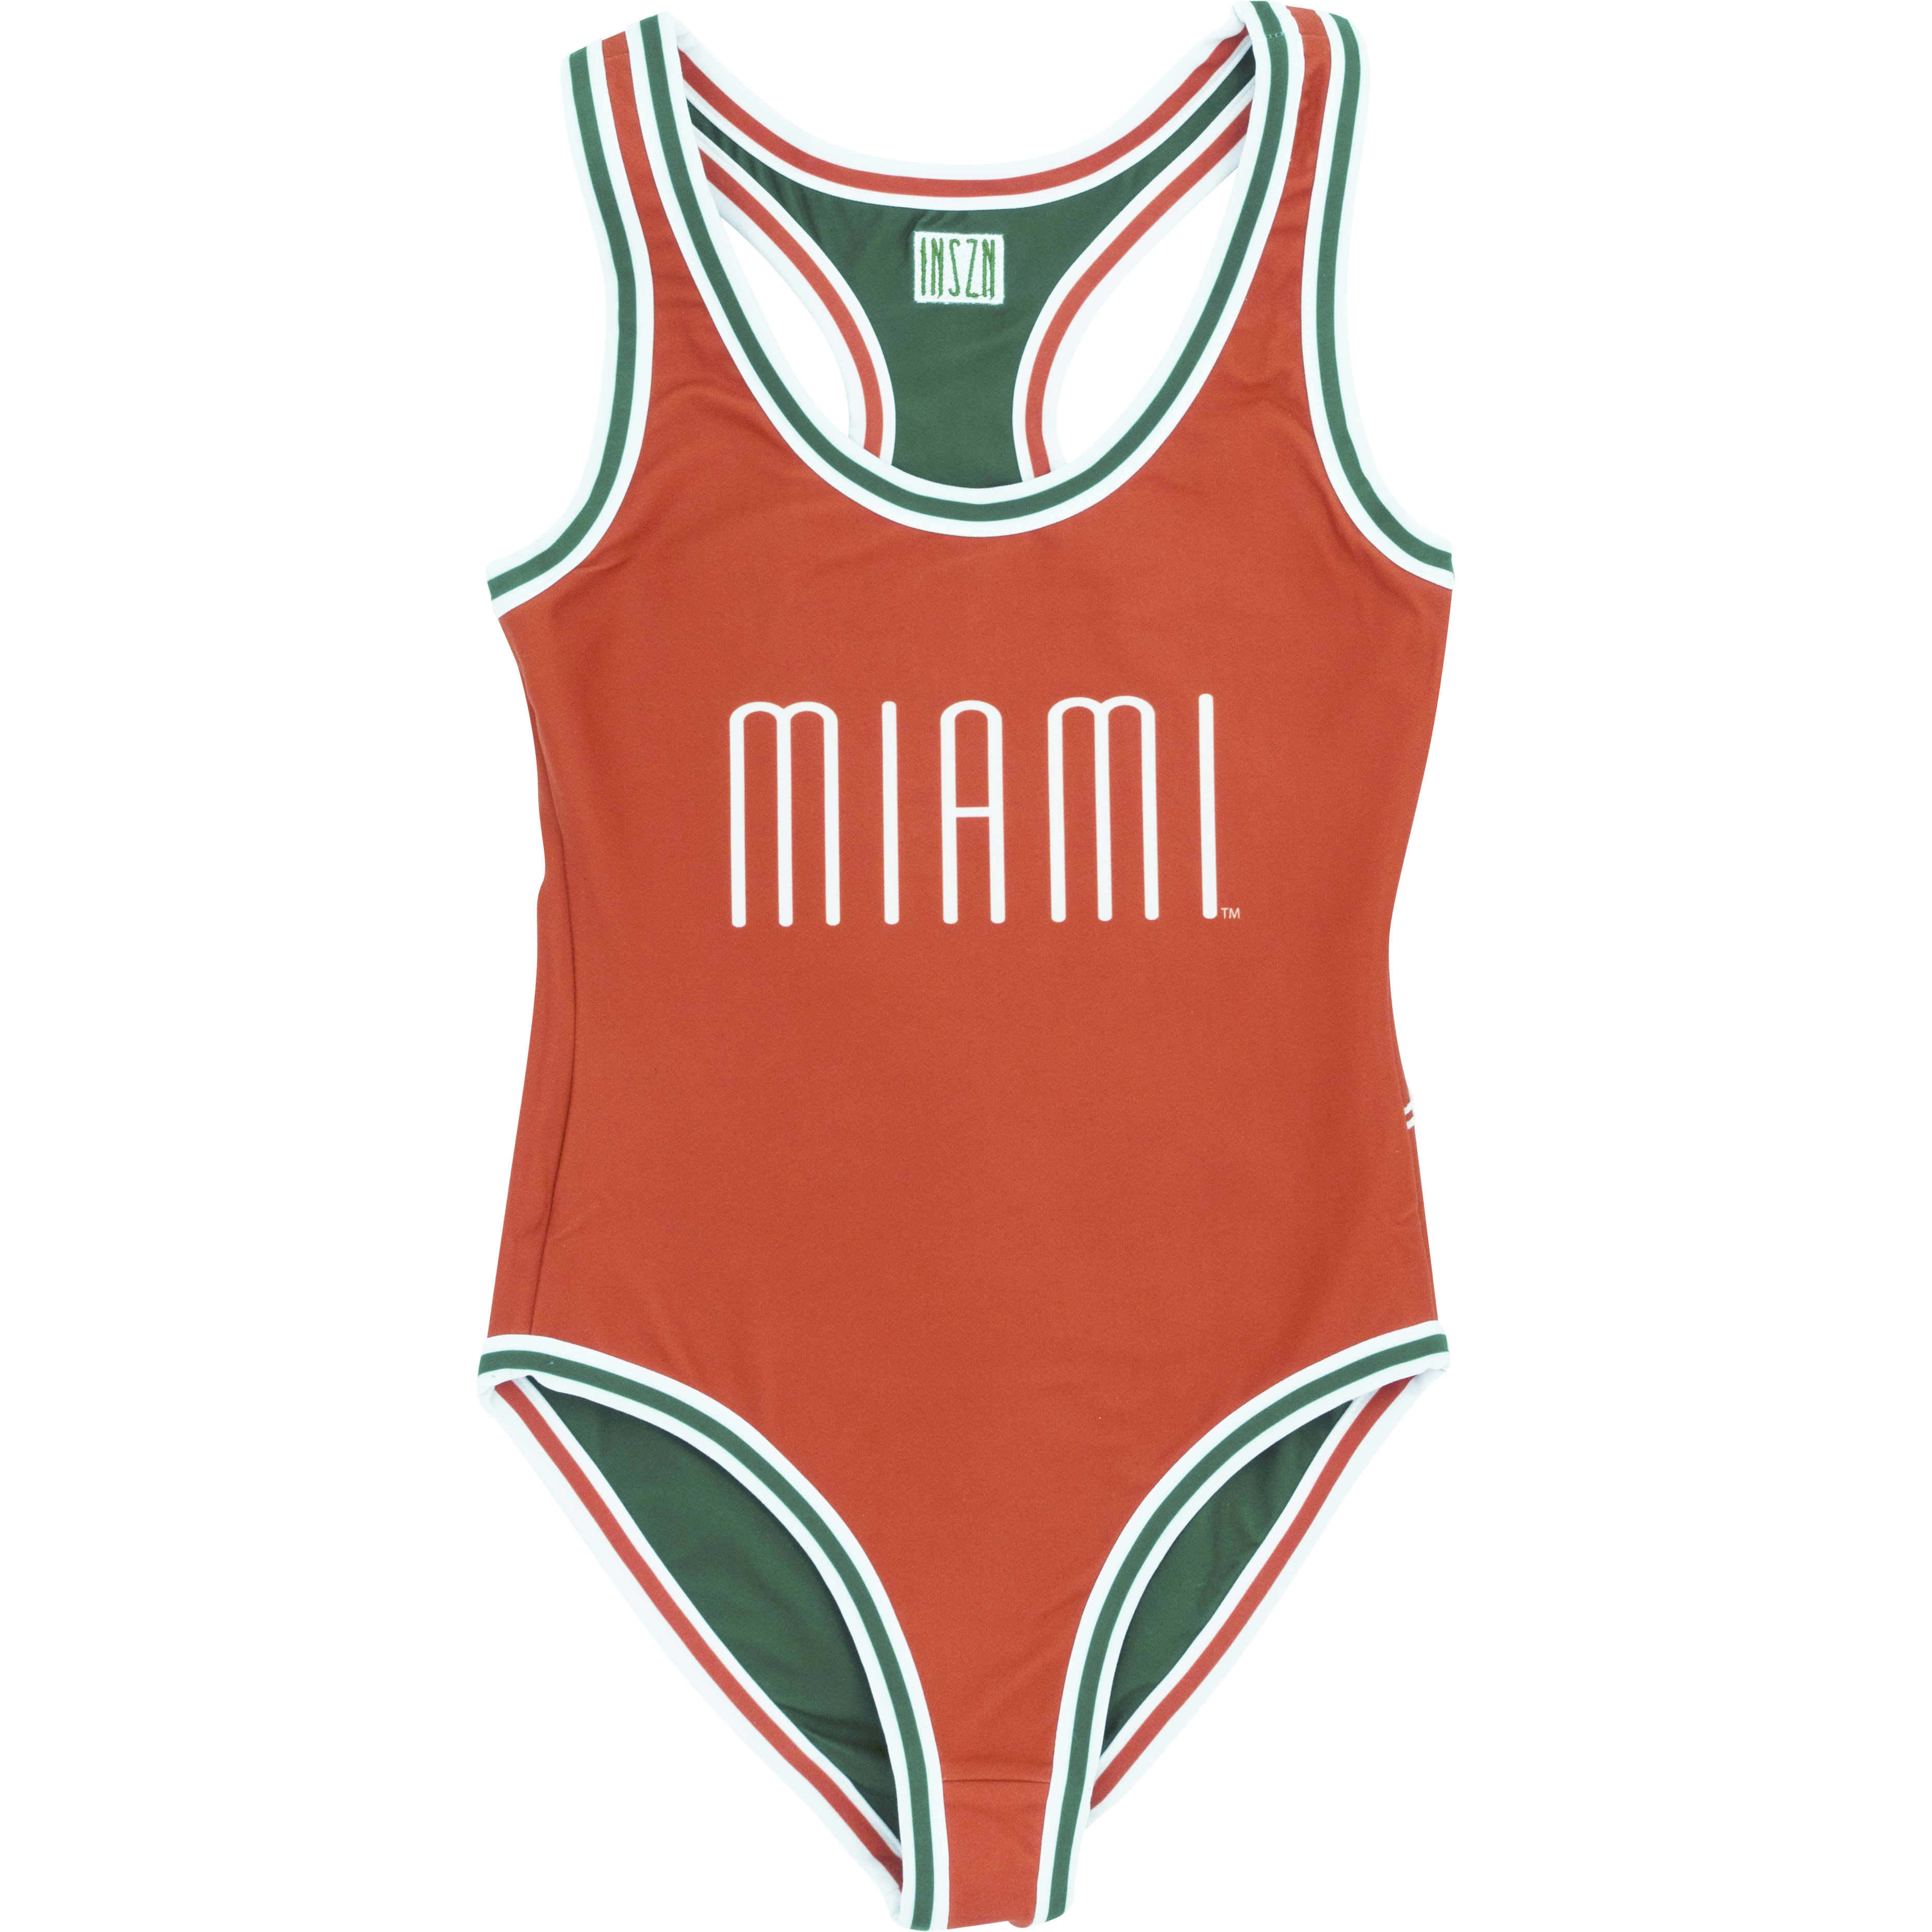 INSZN Miami Reversible Body Suit - Orange/Green